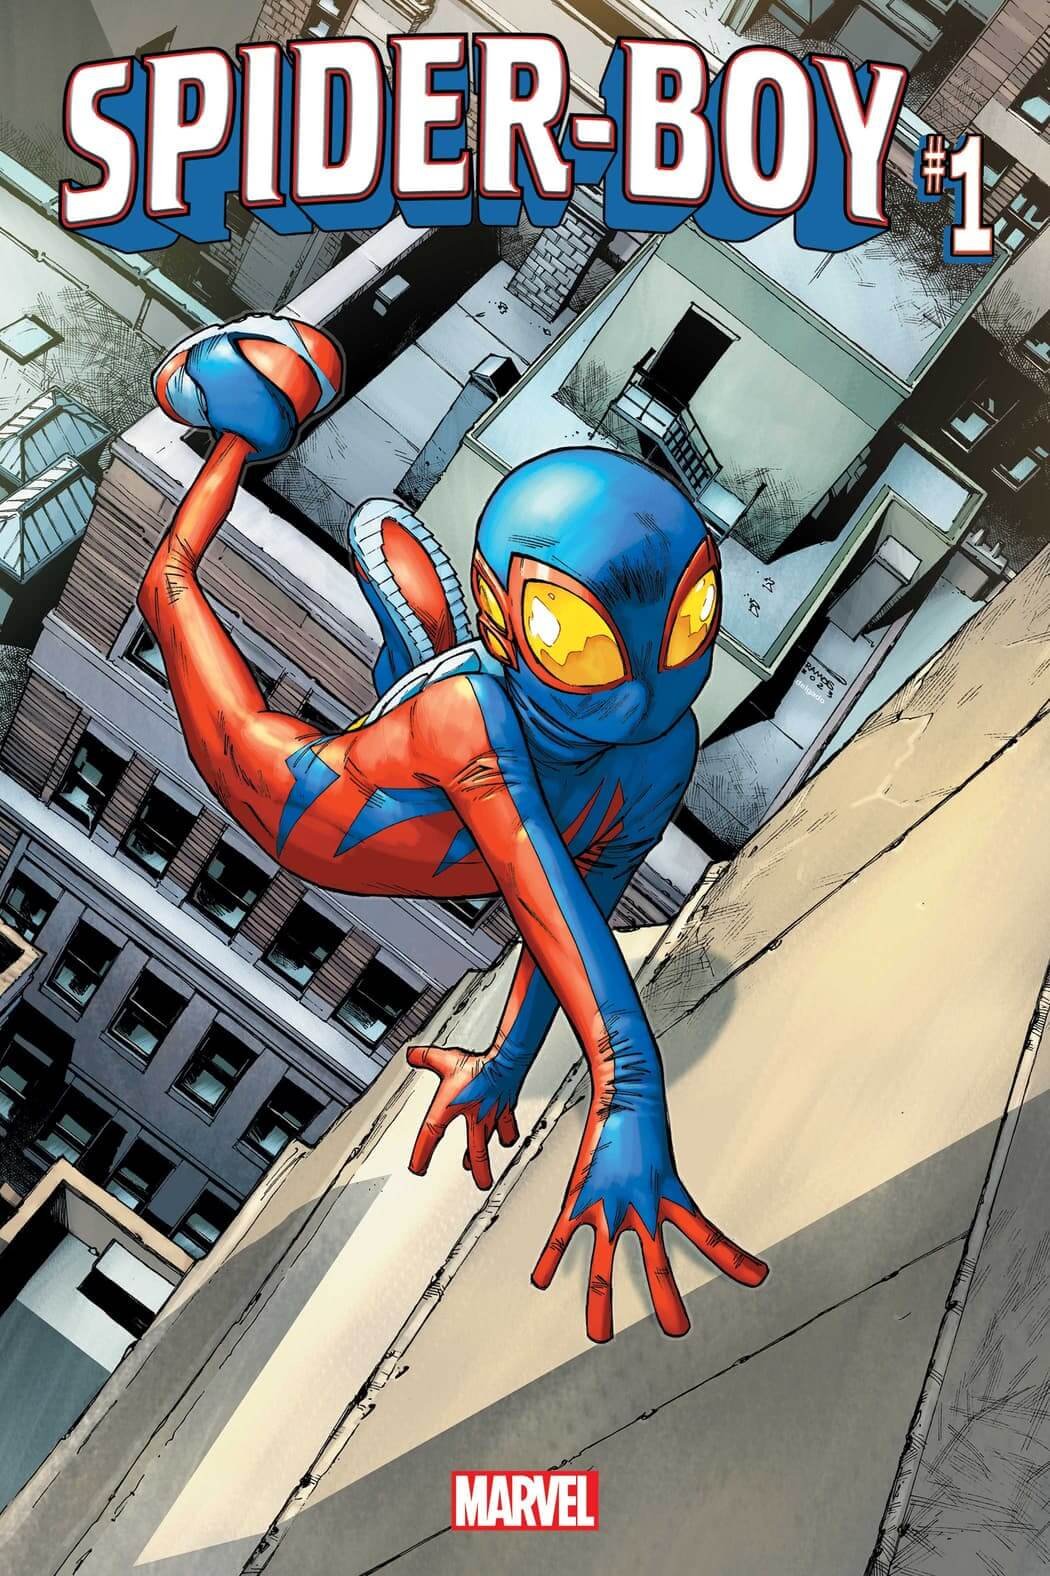 Couverture de Spider-Boy 1 par Humberto Ramos